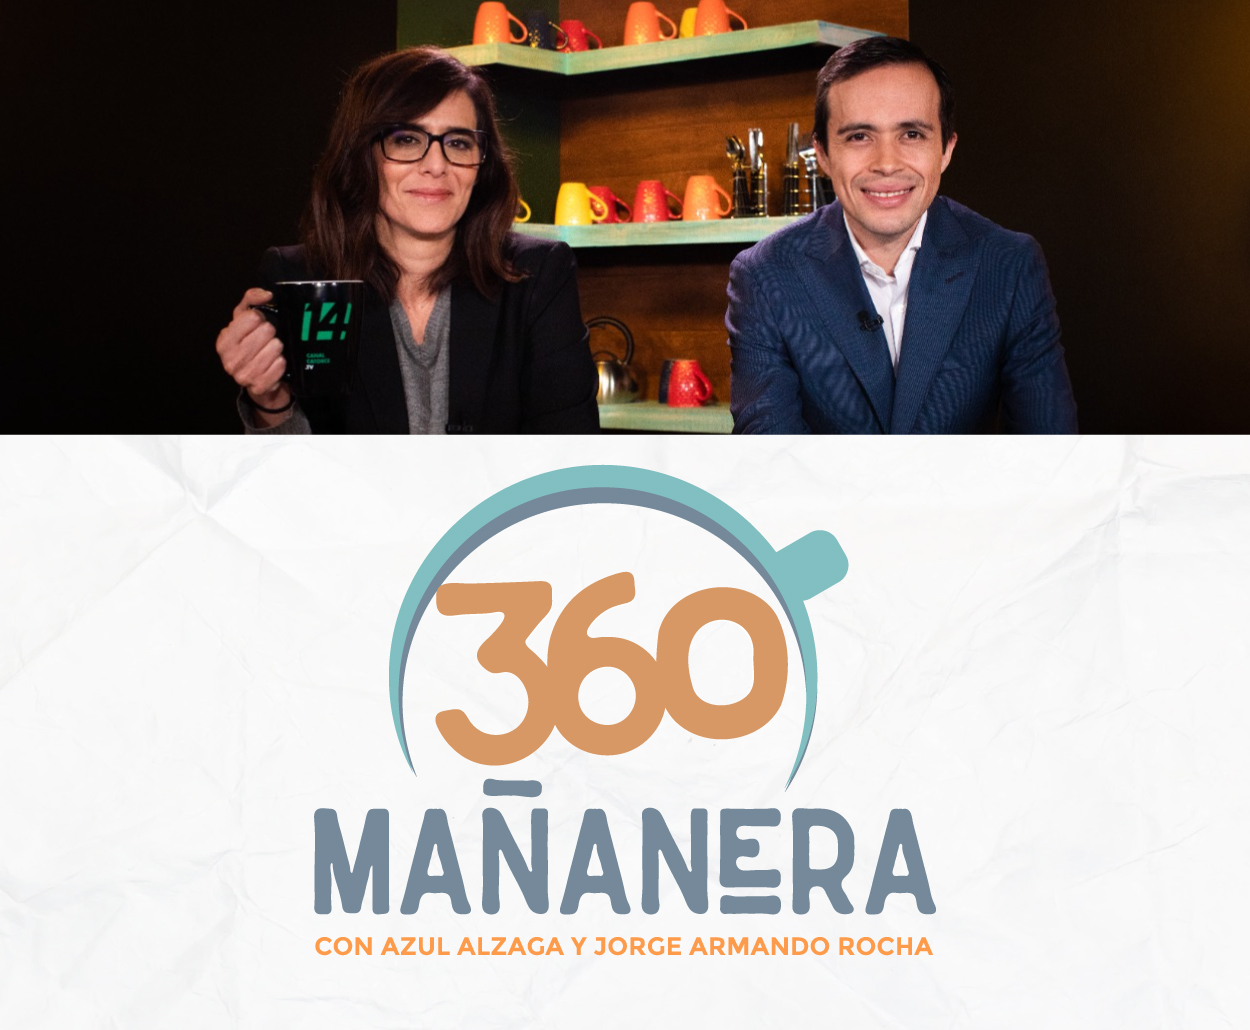 Canal Catorce del SPR estrena “Mañanera 360”, programa de revista informativa sobre la Conferencia Matutina Presidencial